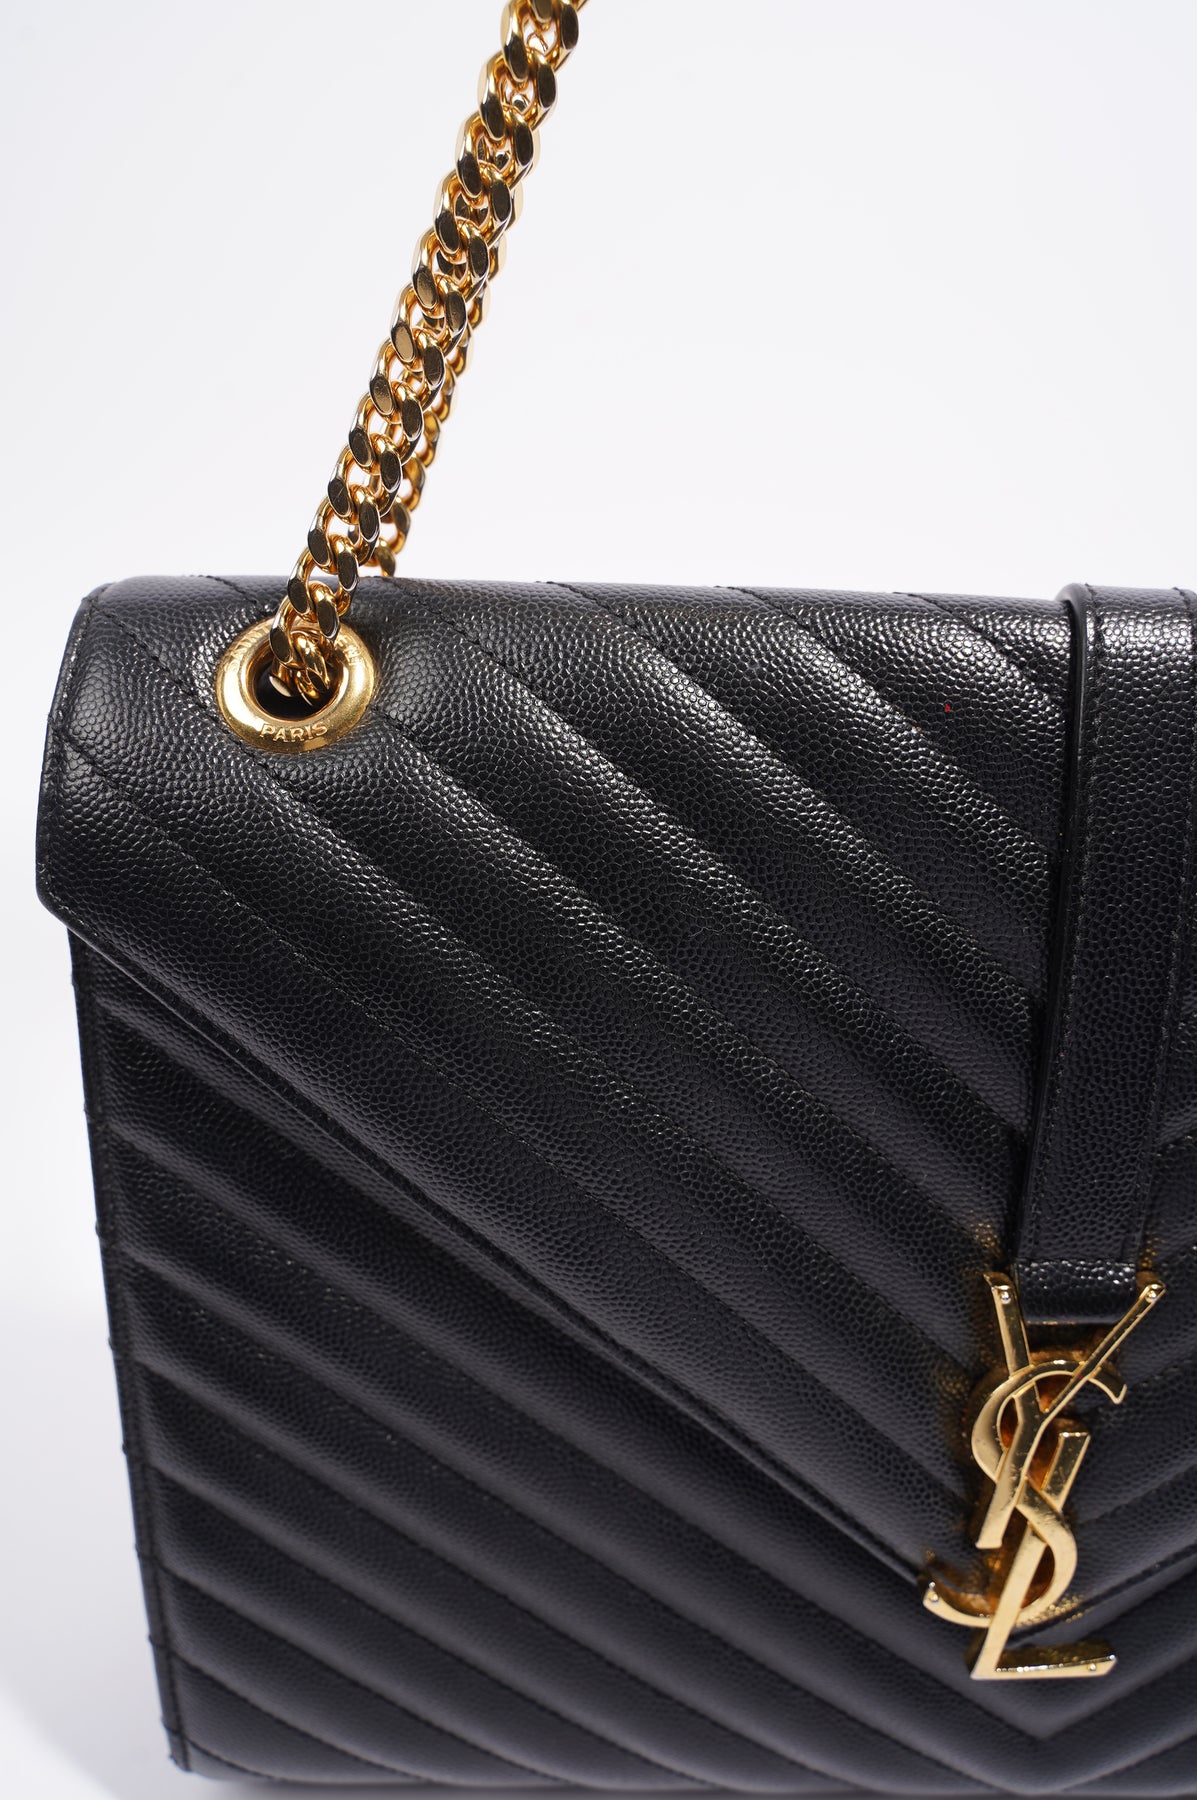 Envelope leather handbag Saint Laurent Black in Leather - 34307611